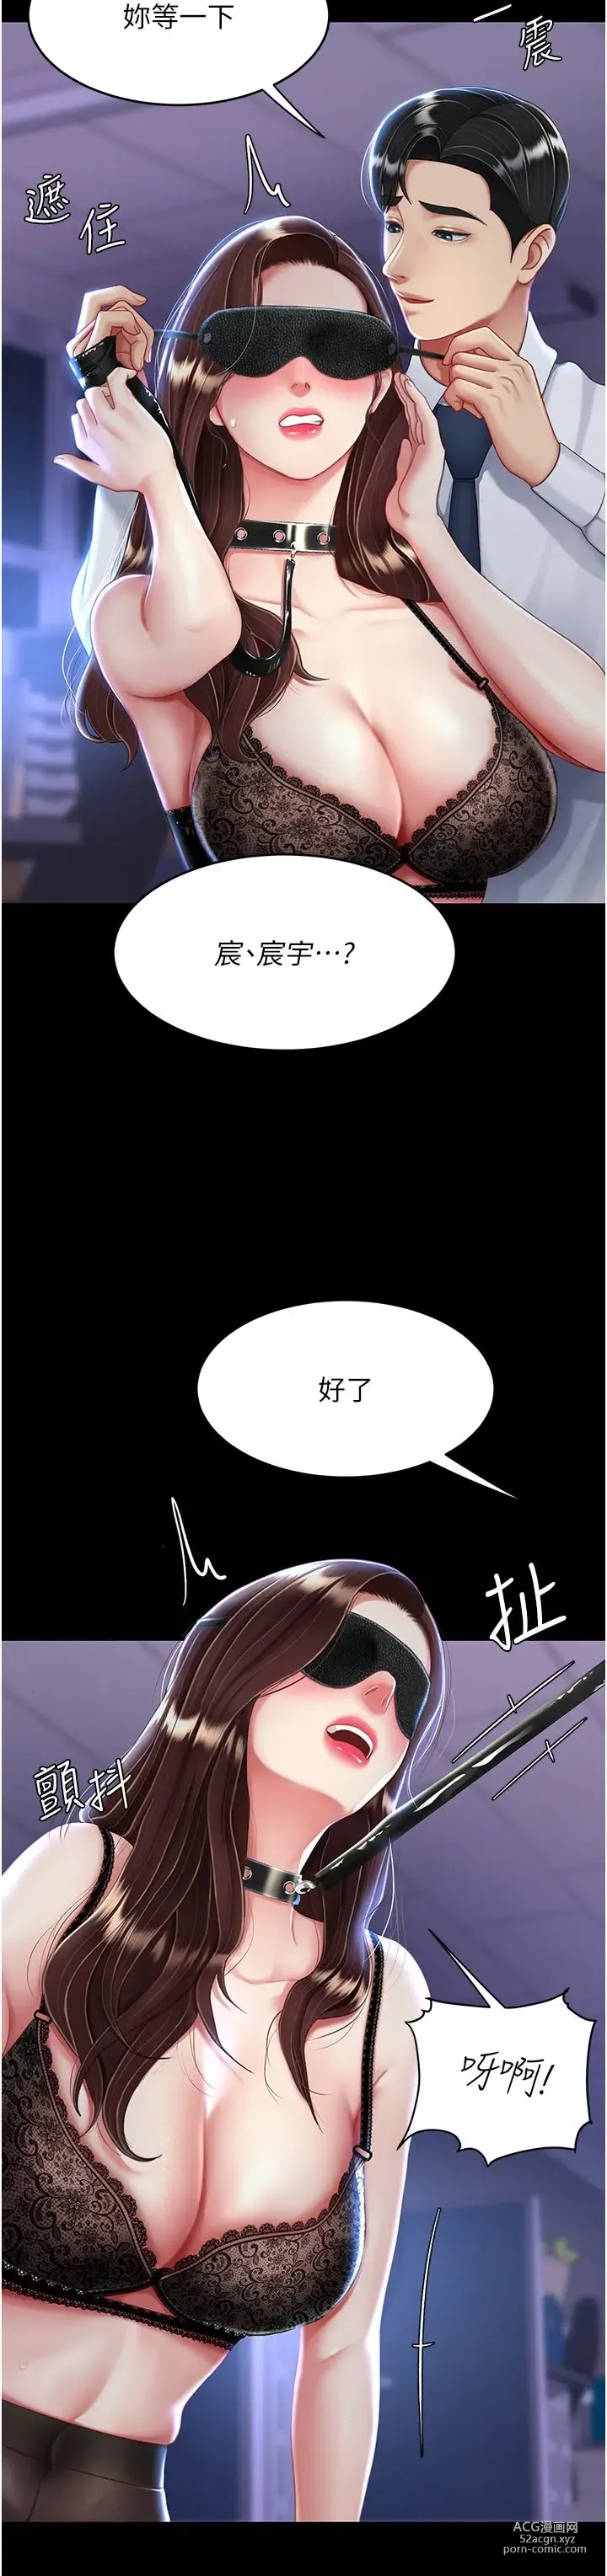 Page 1168 of manga 复仇母女丼 1-20话 官中无水印